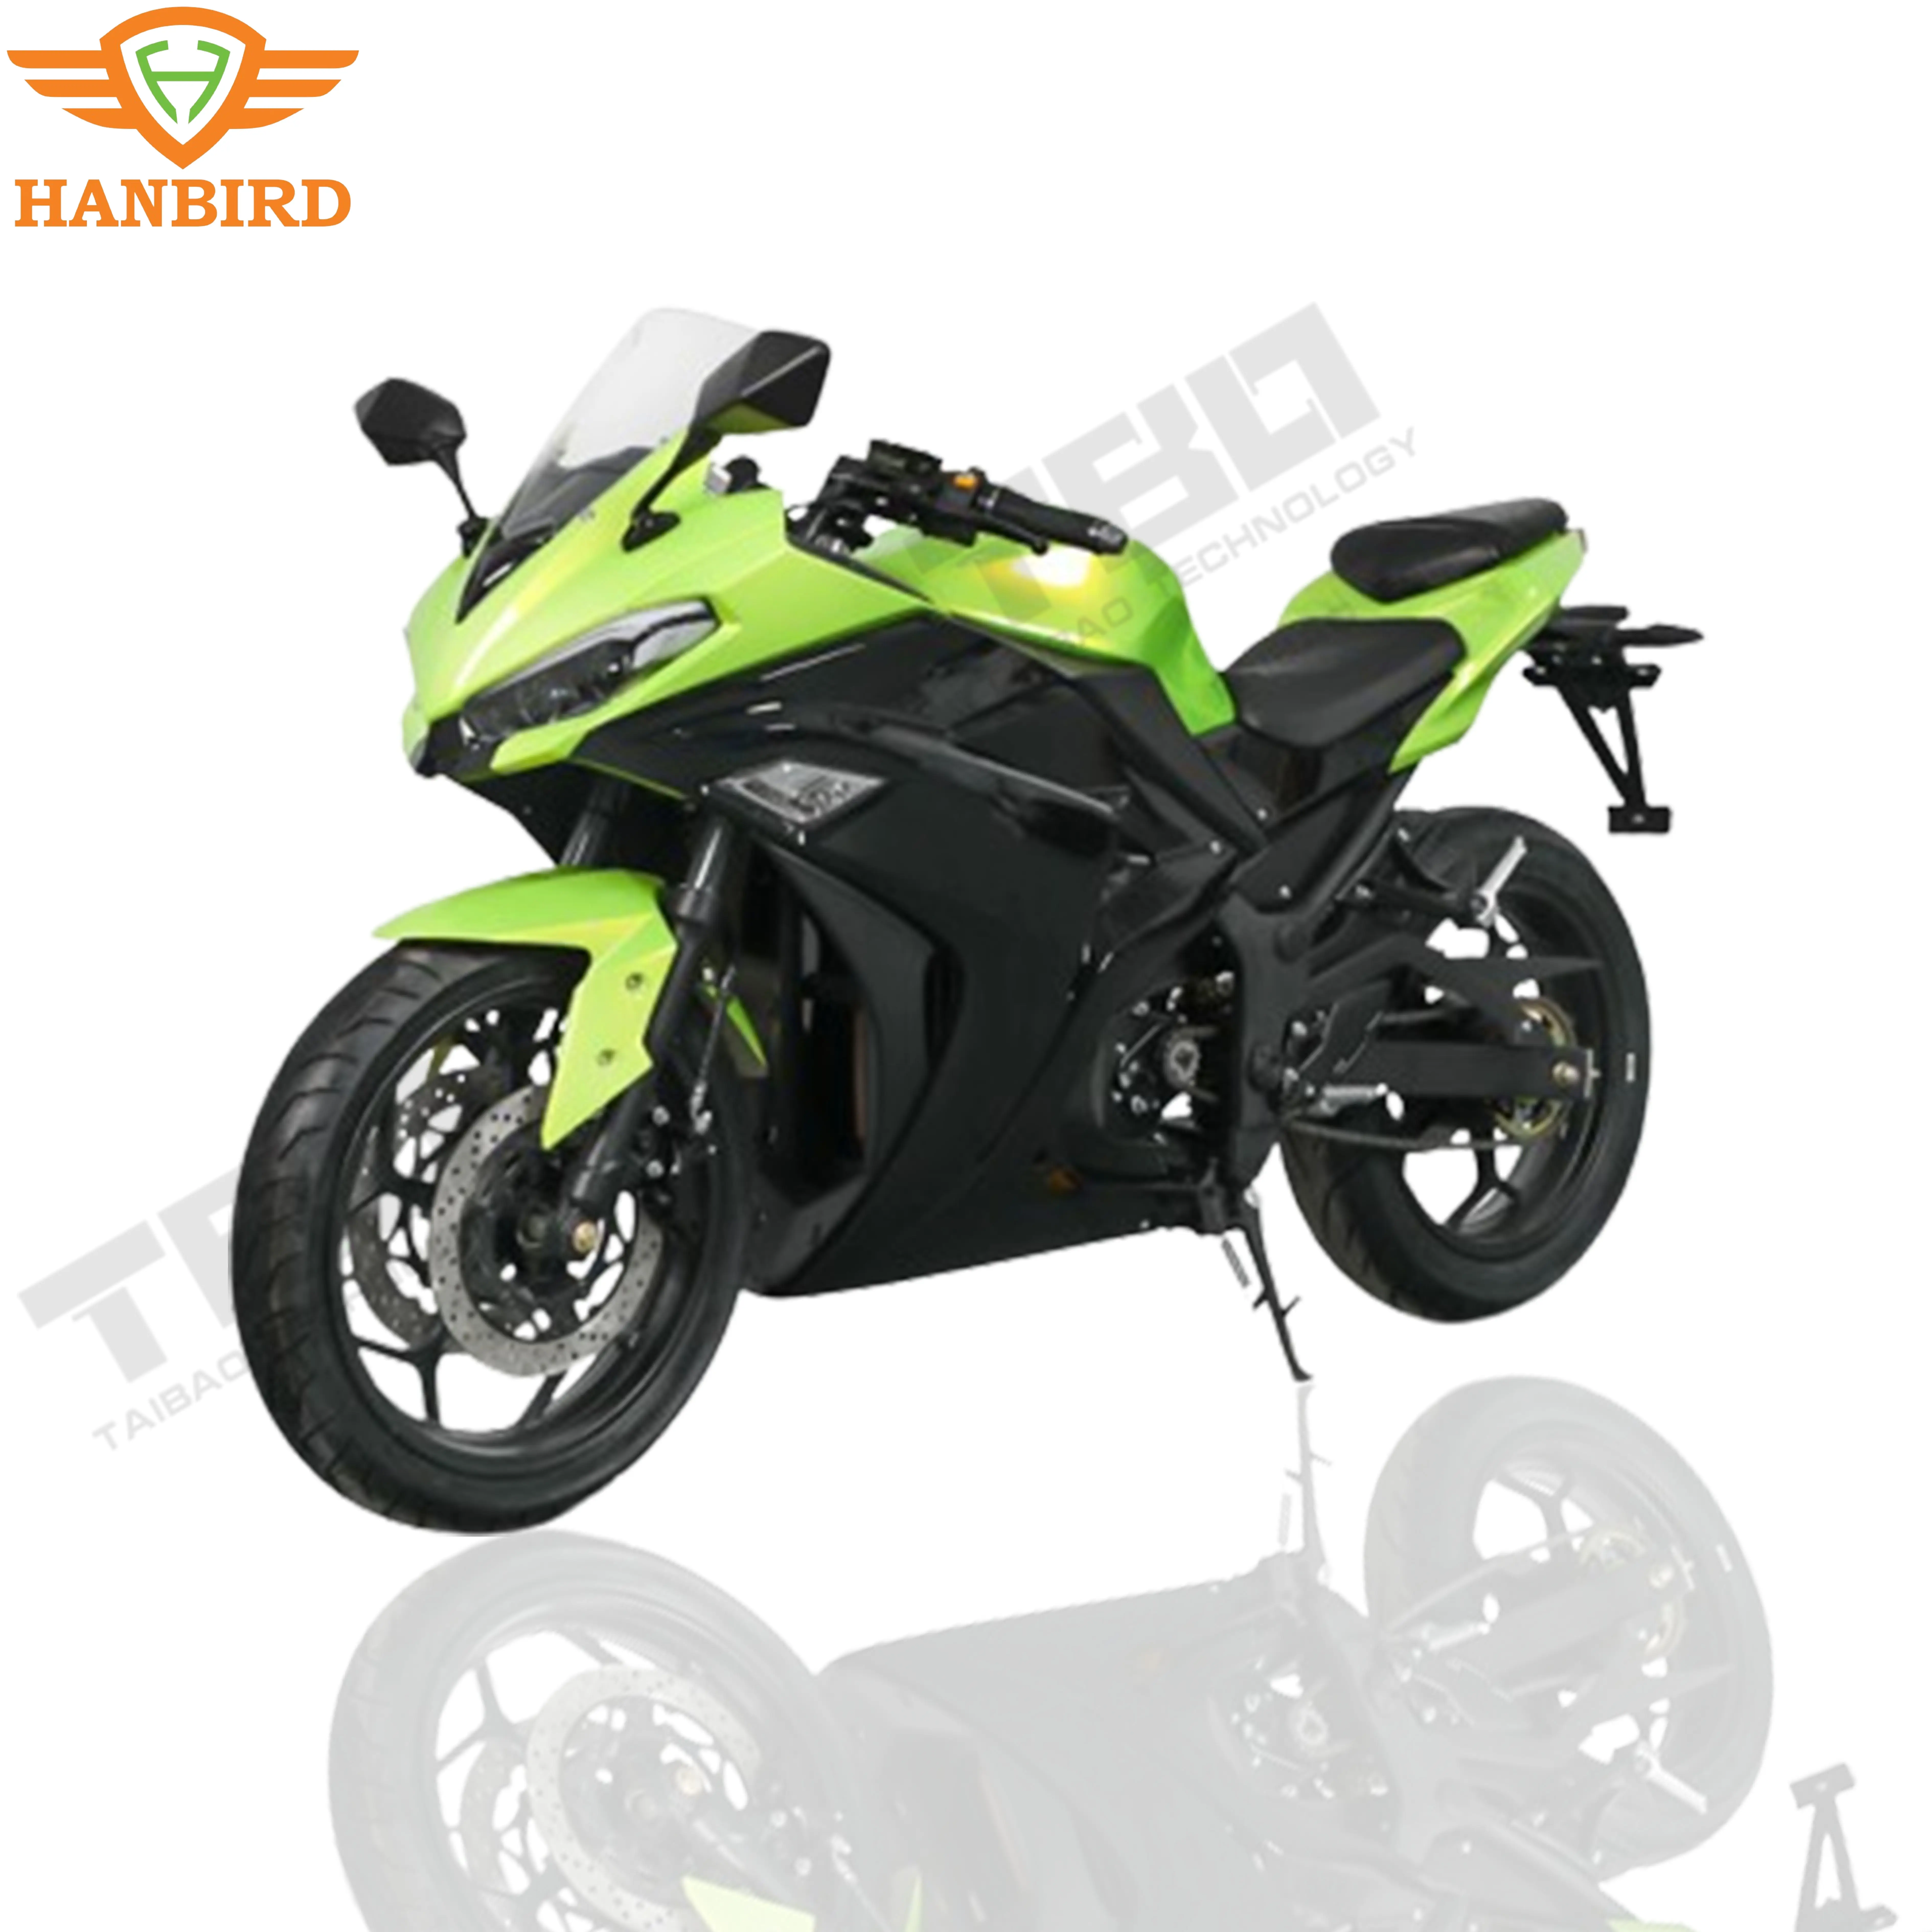 Importar motocicletas 5000w da América, motocicleta elétrica usada no Japão, com melhor serviço e preço baixo